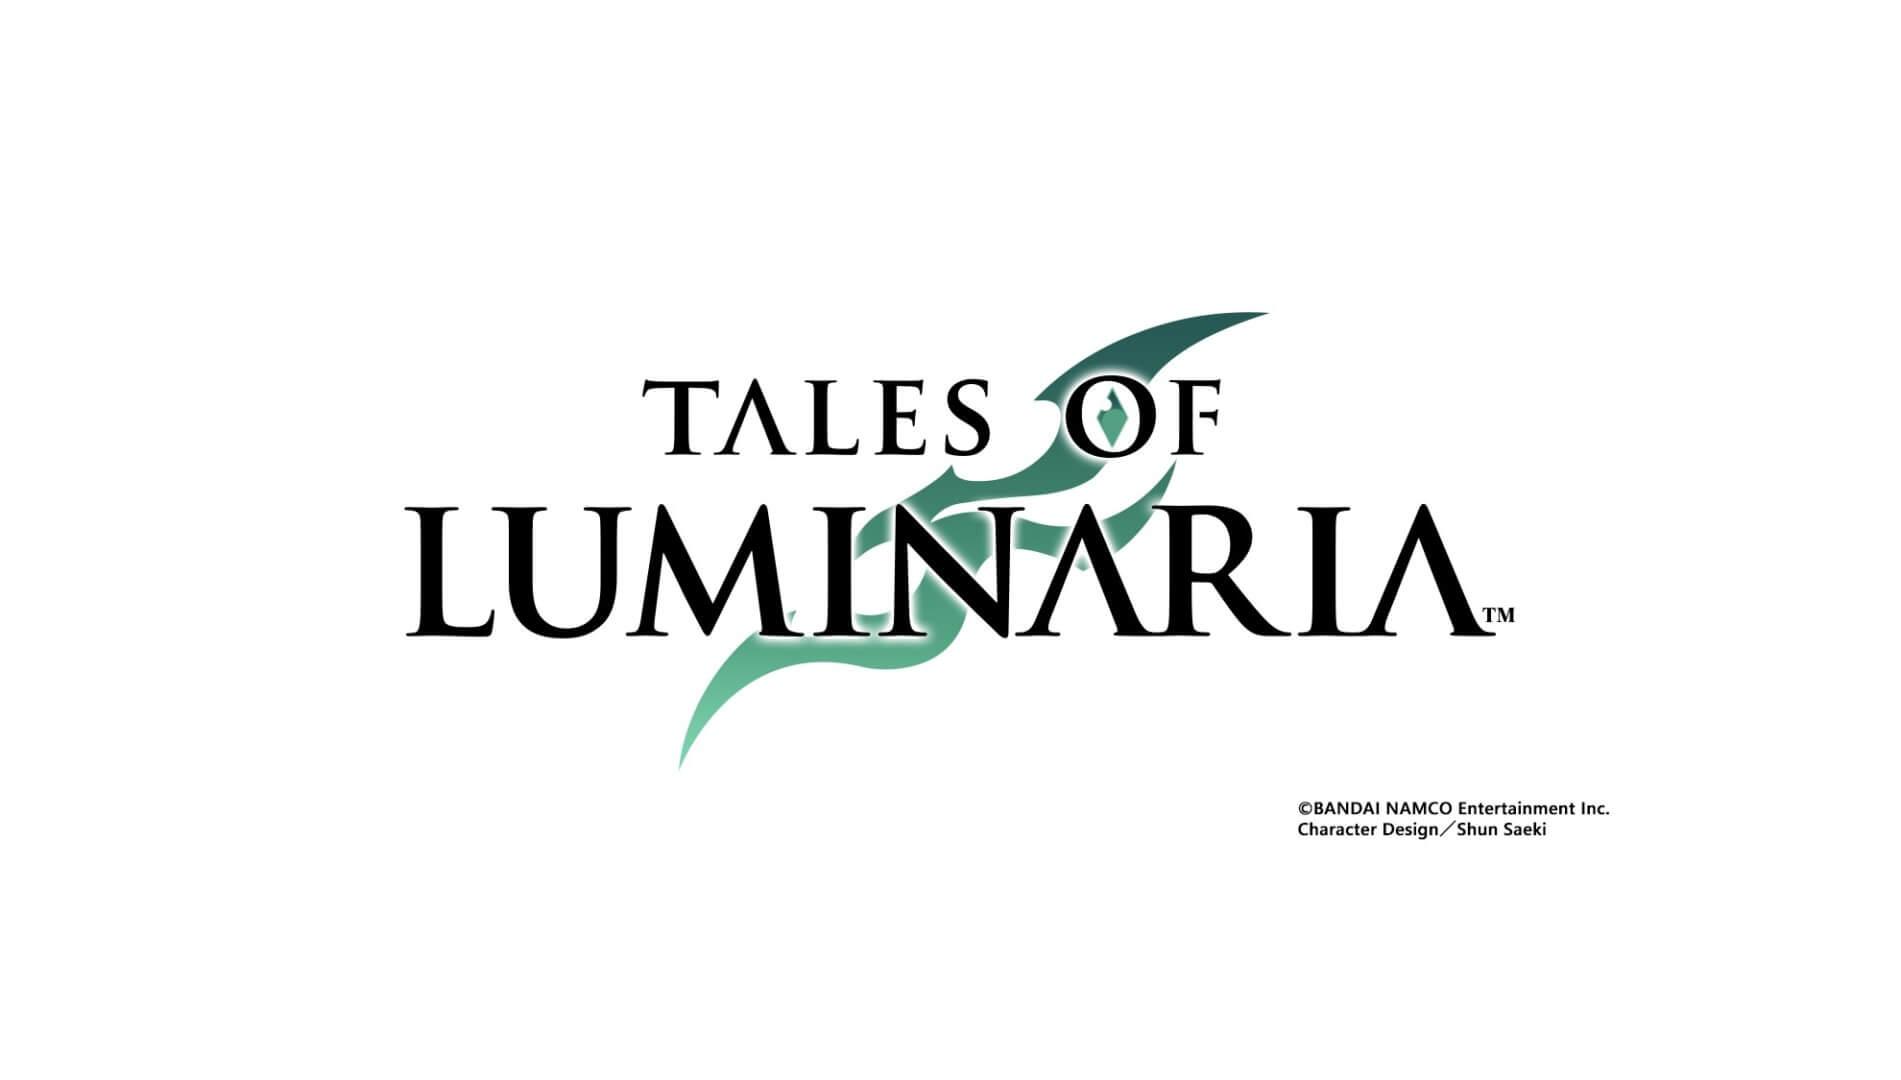 TALES OF LUMINARIA